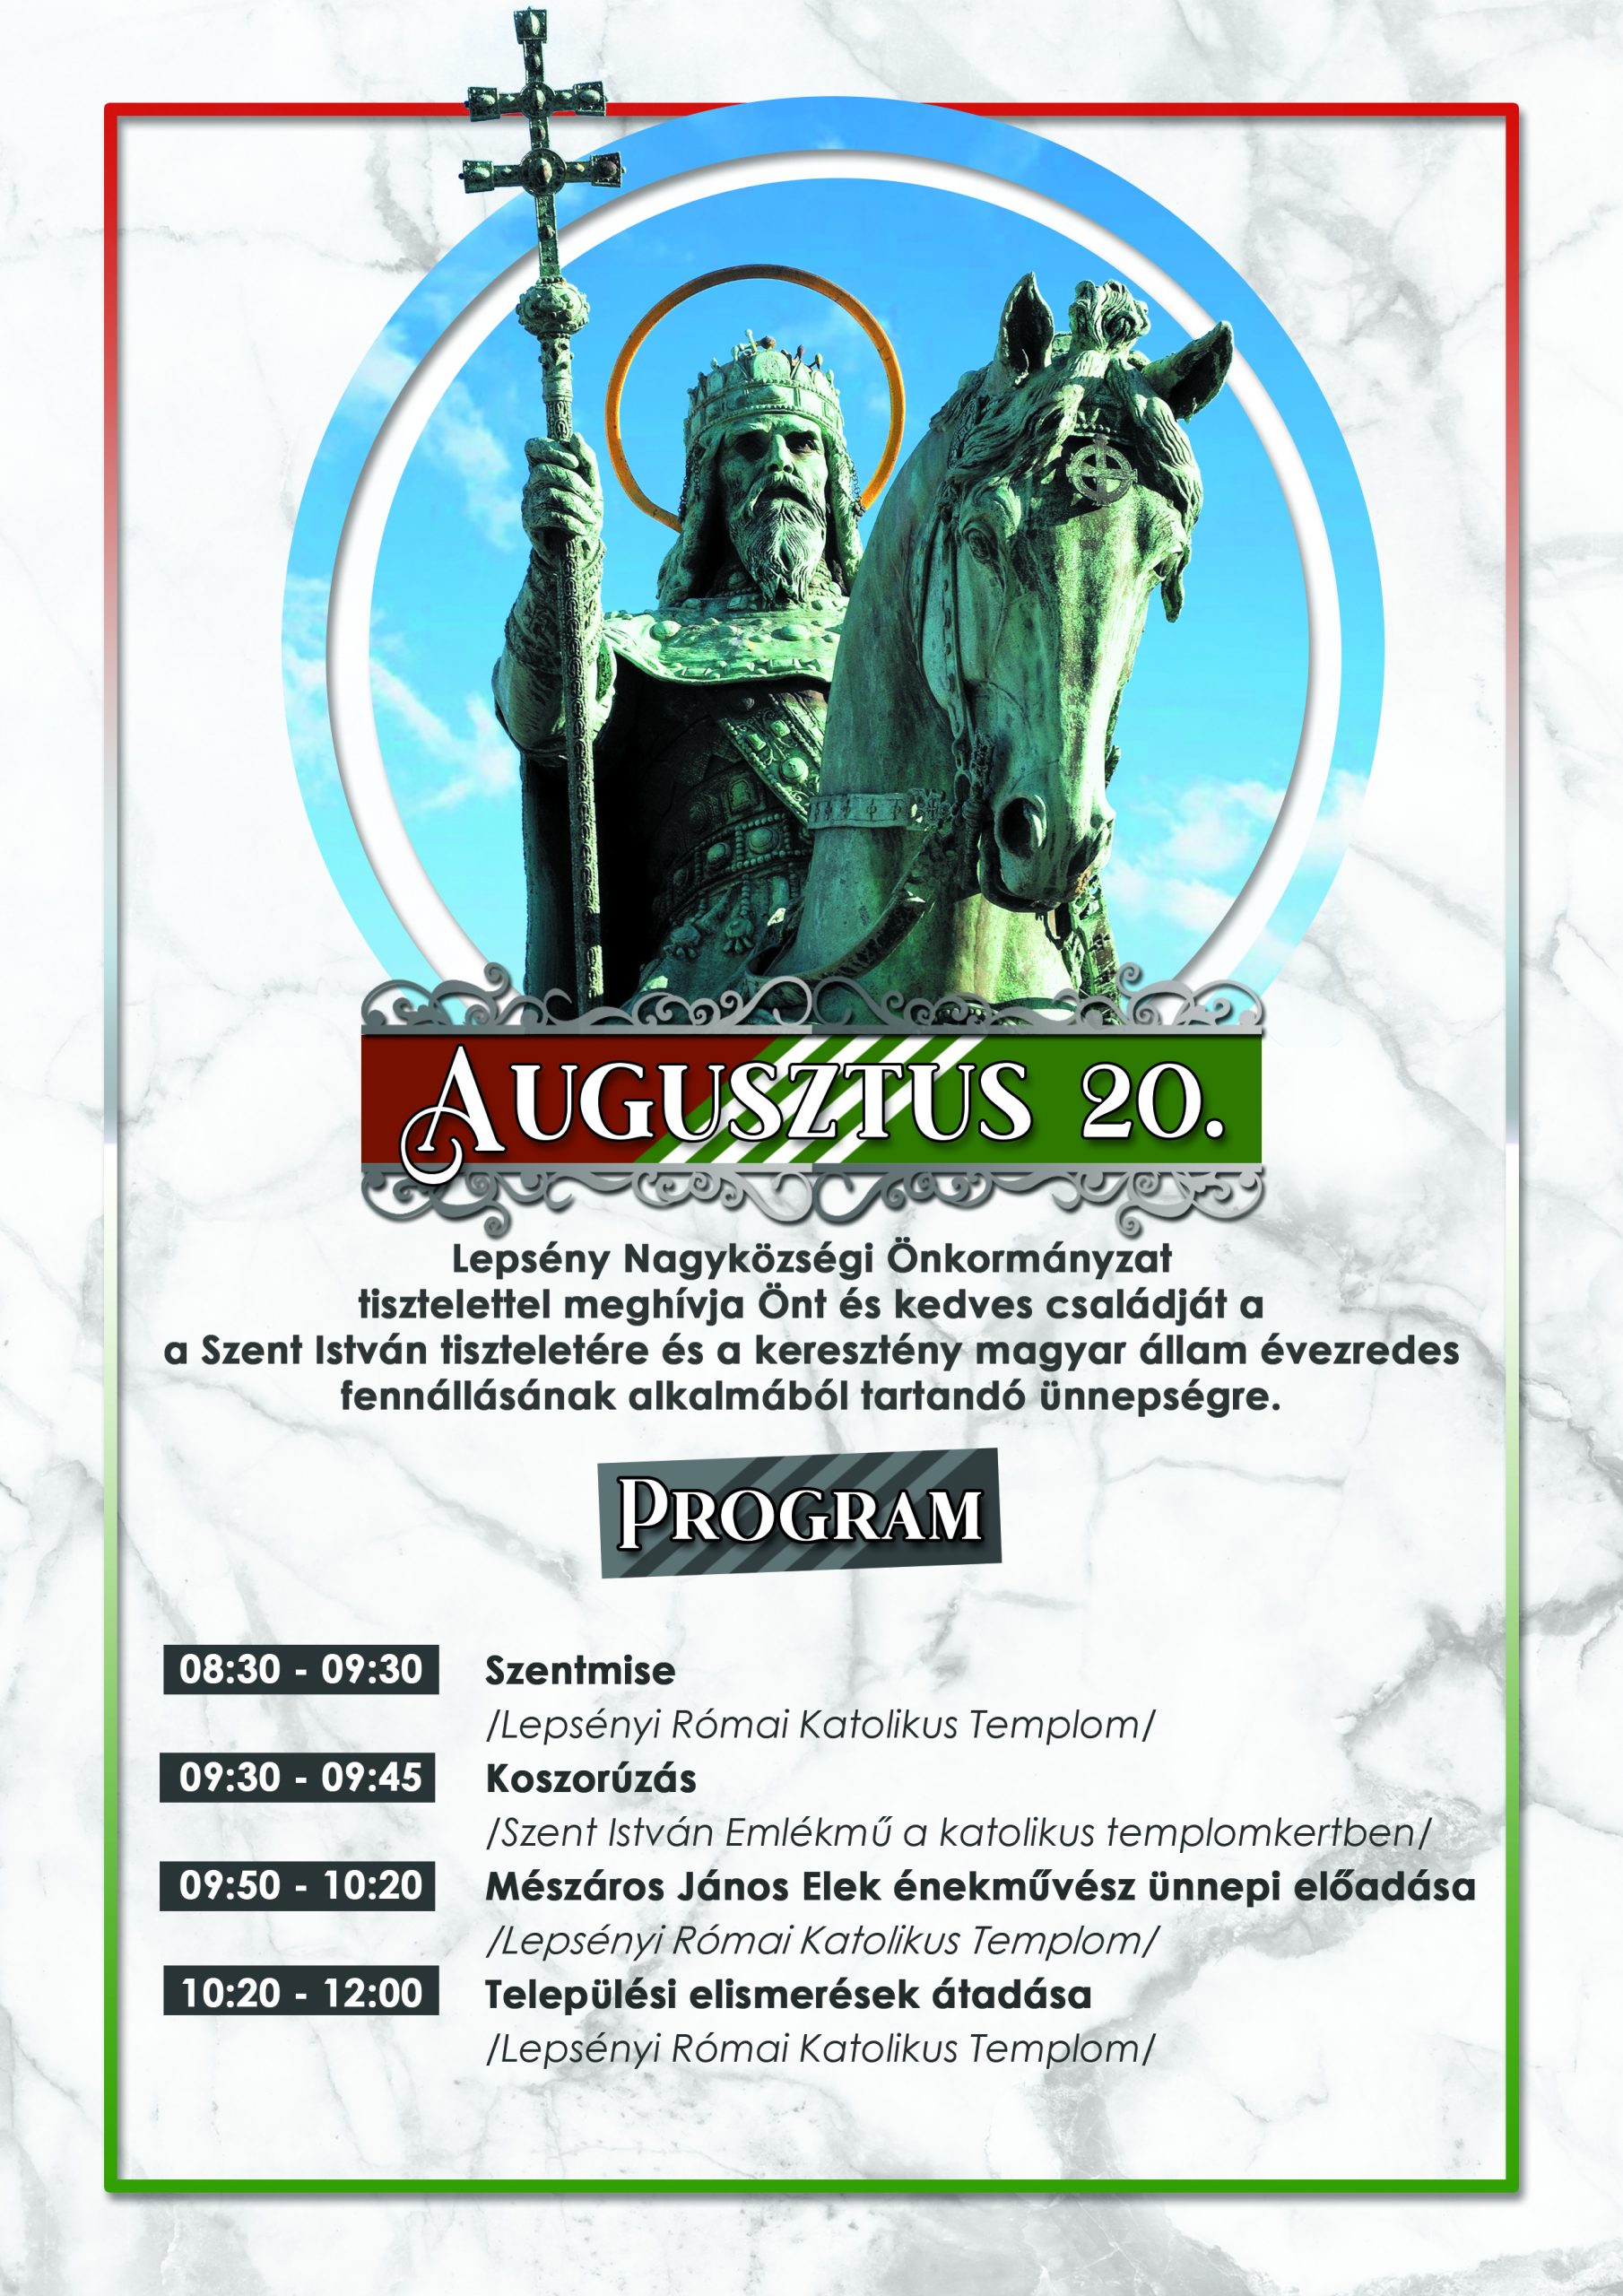 Plakát augusztus 20-i megemlékezésről. Augusztus 20-án 08:30-től a Lepsényi Római Katolikus Templomban.